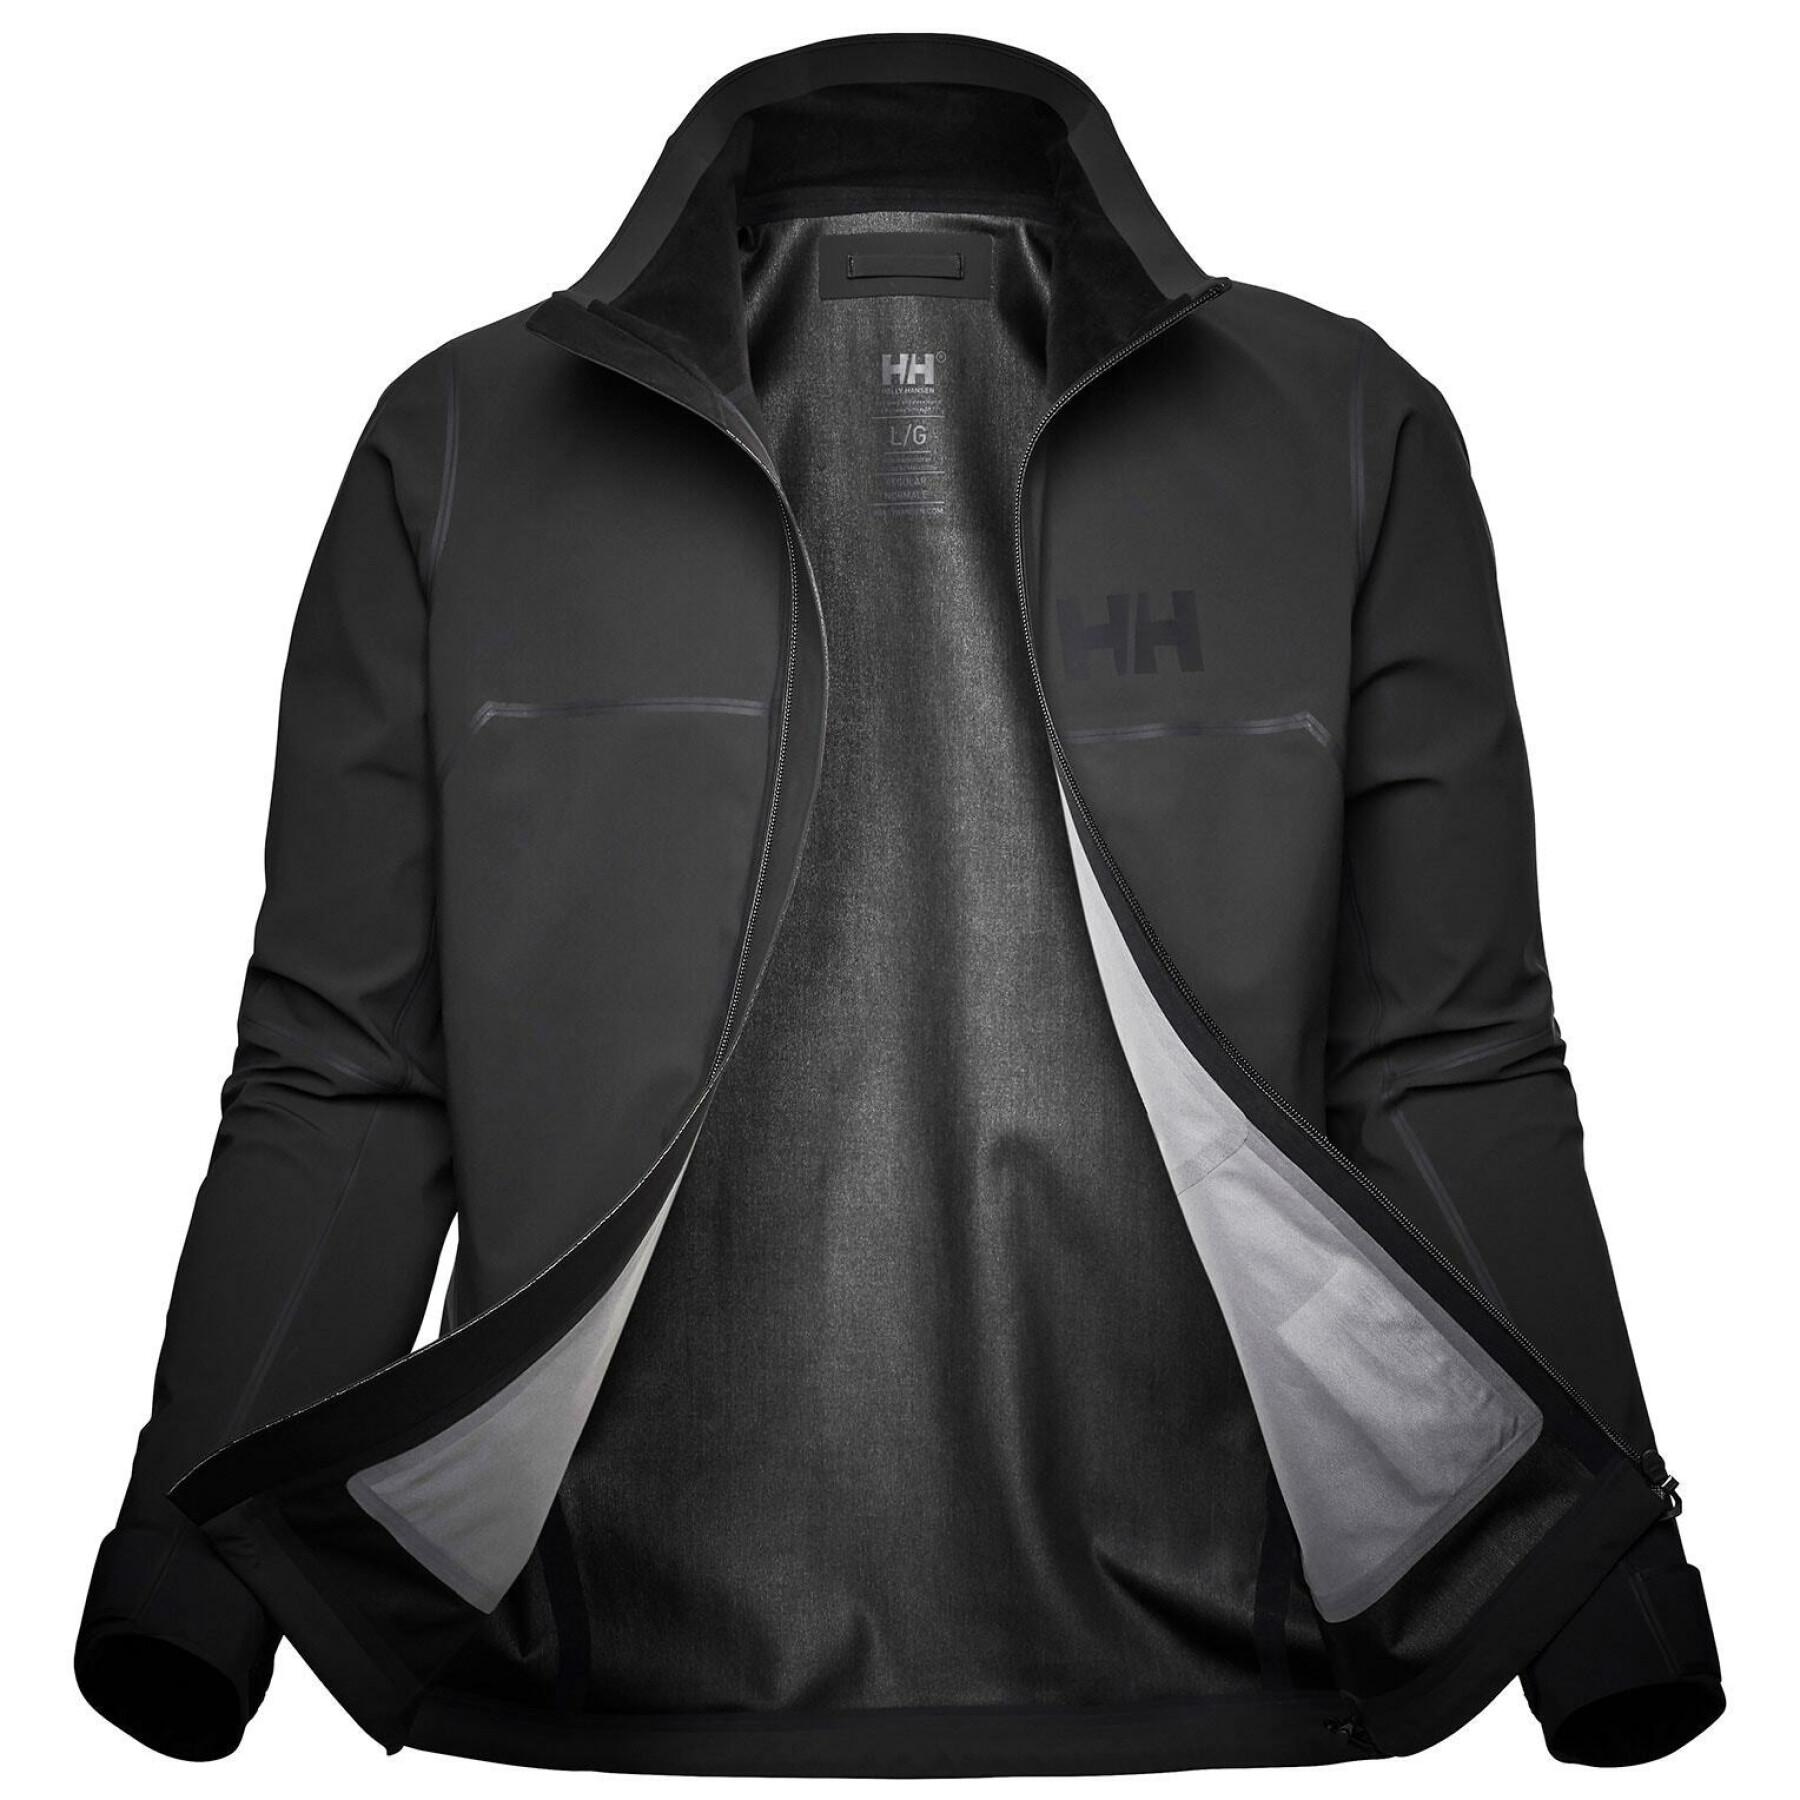 Waterproof softshell jacket Helly Hansen Foil Pro